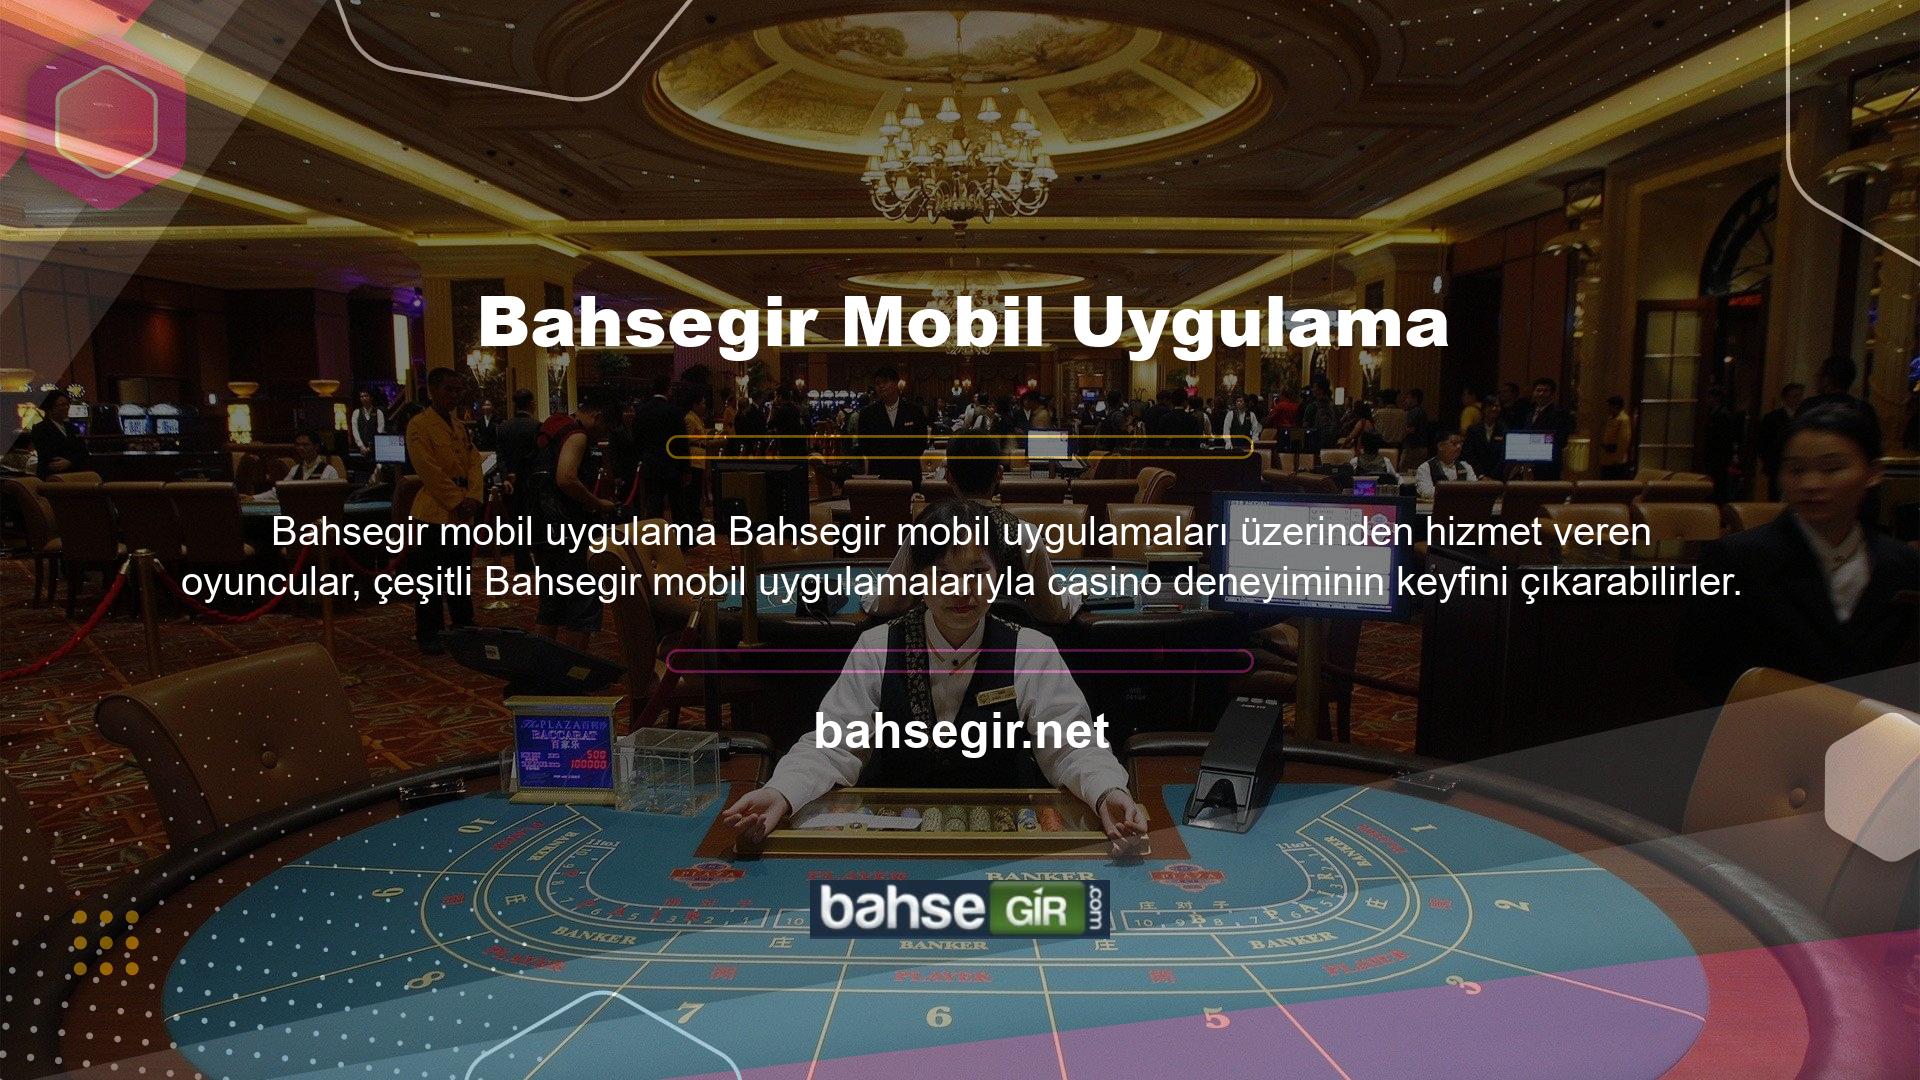 Bahsegir, Türkiye'de uzun yıllardır mükemmel casino deneyimi ve kaliteli oyunlar sunan sağlam bir şirkettir